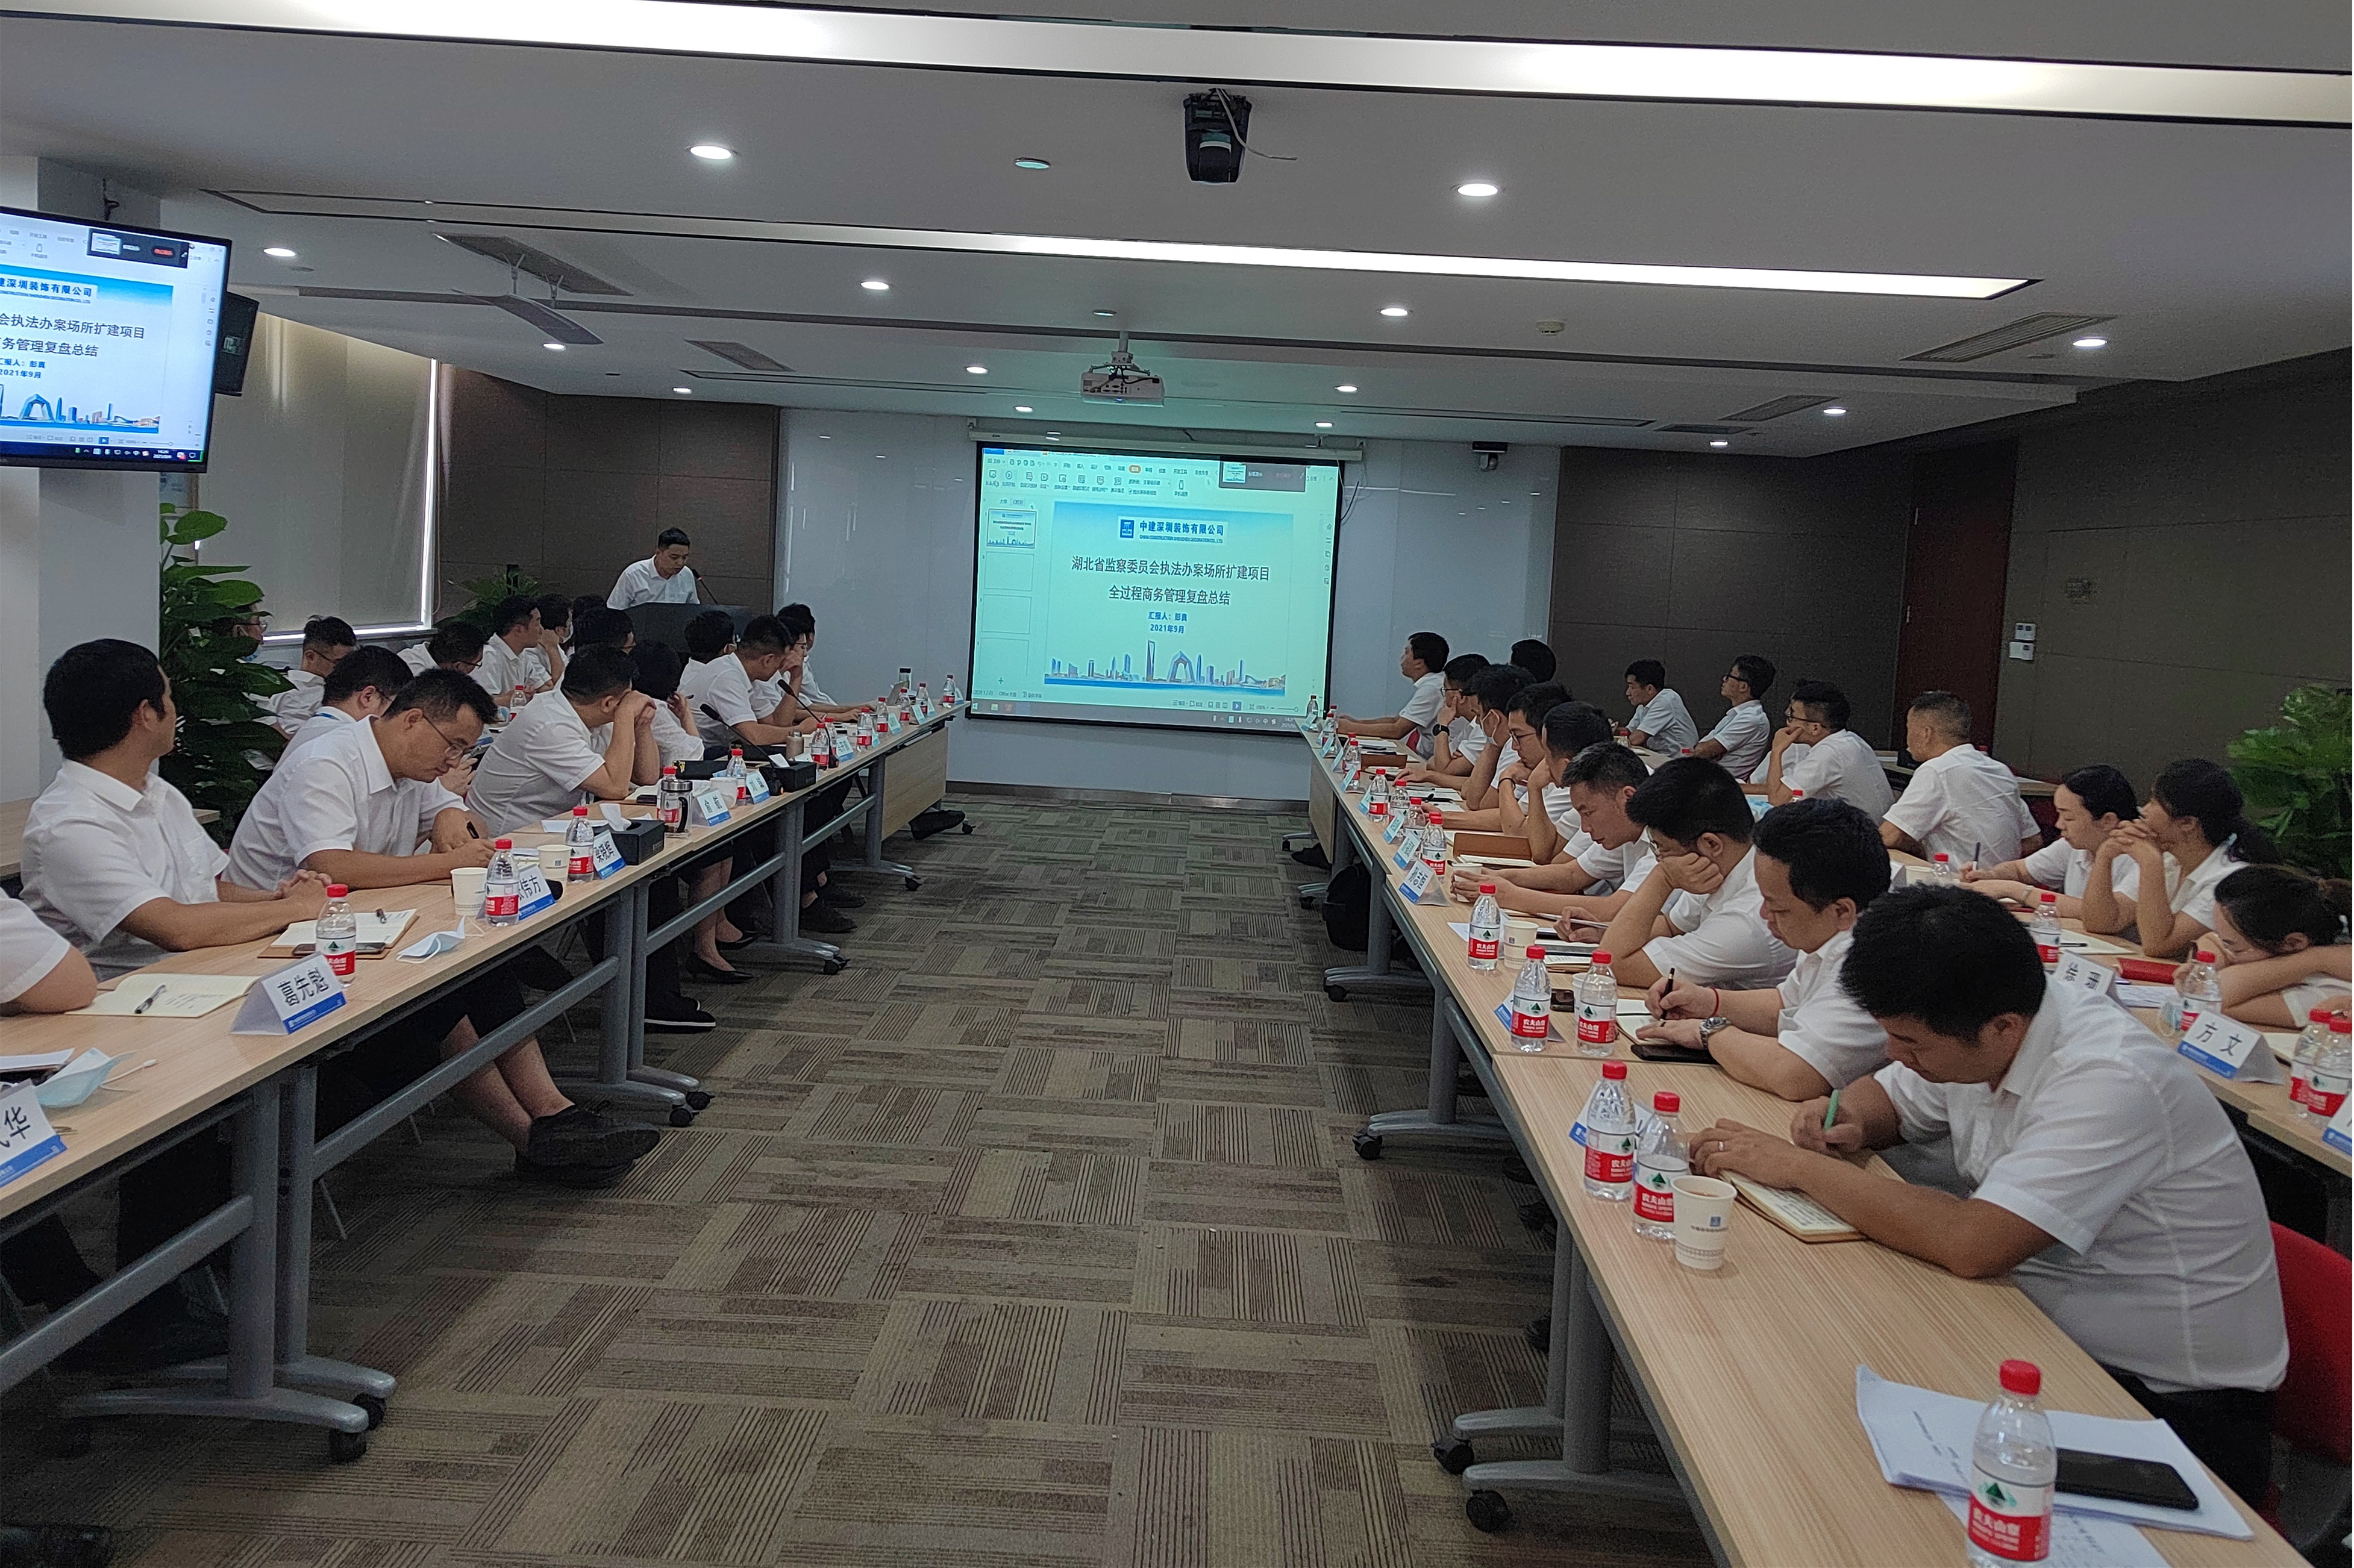 完美体育|(中国)有限公司
武汉分公司成功举办EPC专题研讨会